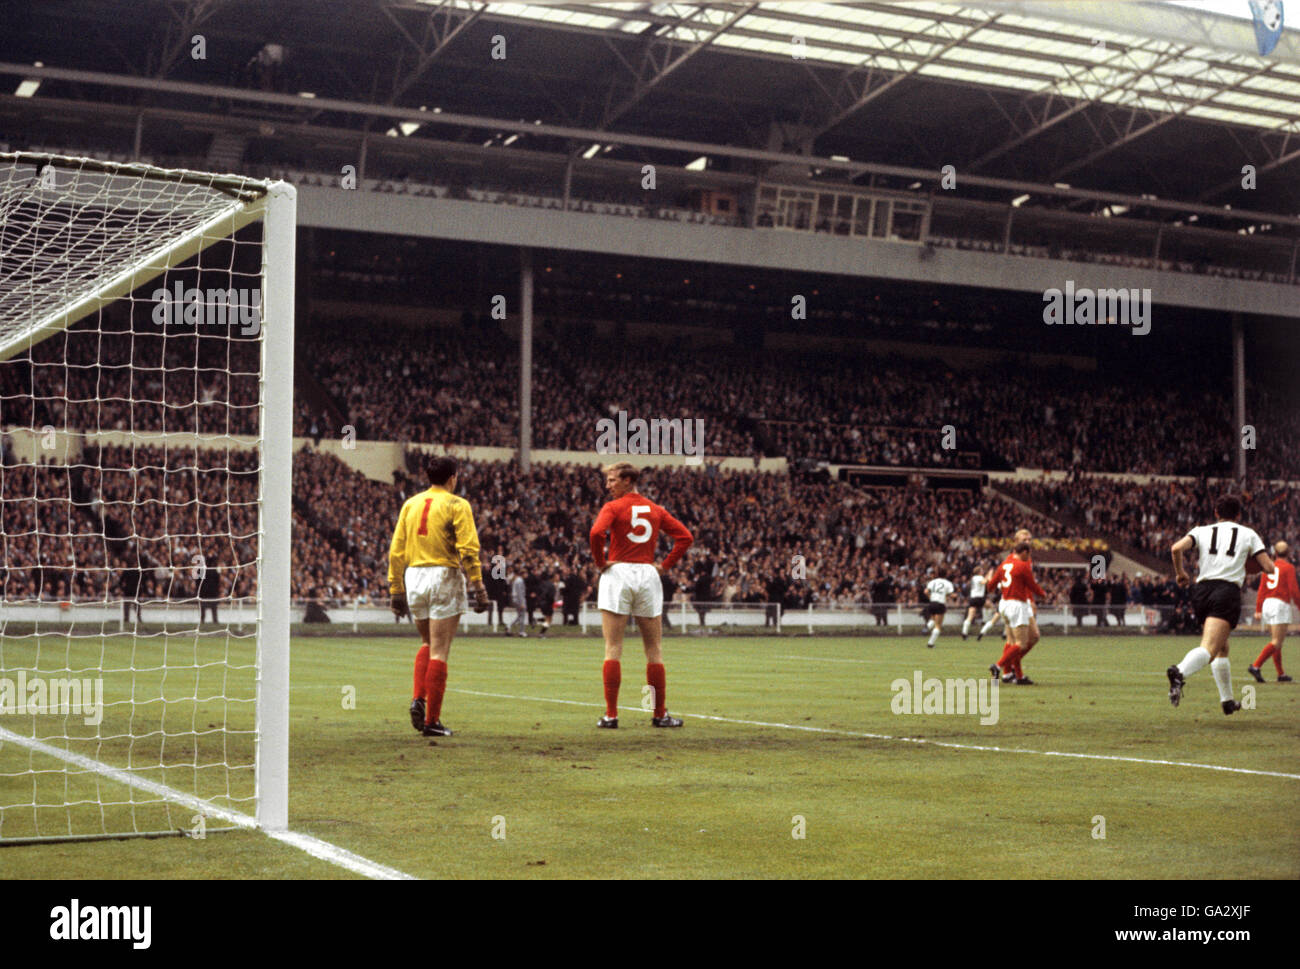 England gegen Westdeutschland - Weltcup-Finale 1966 - Wembley-Stadion. Englands Gordon Banks und Jackie Charlton stehen niedergeschlagen, nachdem der westdeutsche Helmut Haller (nicht abgebildet) die Wertung eröffnet hat Stockfoto